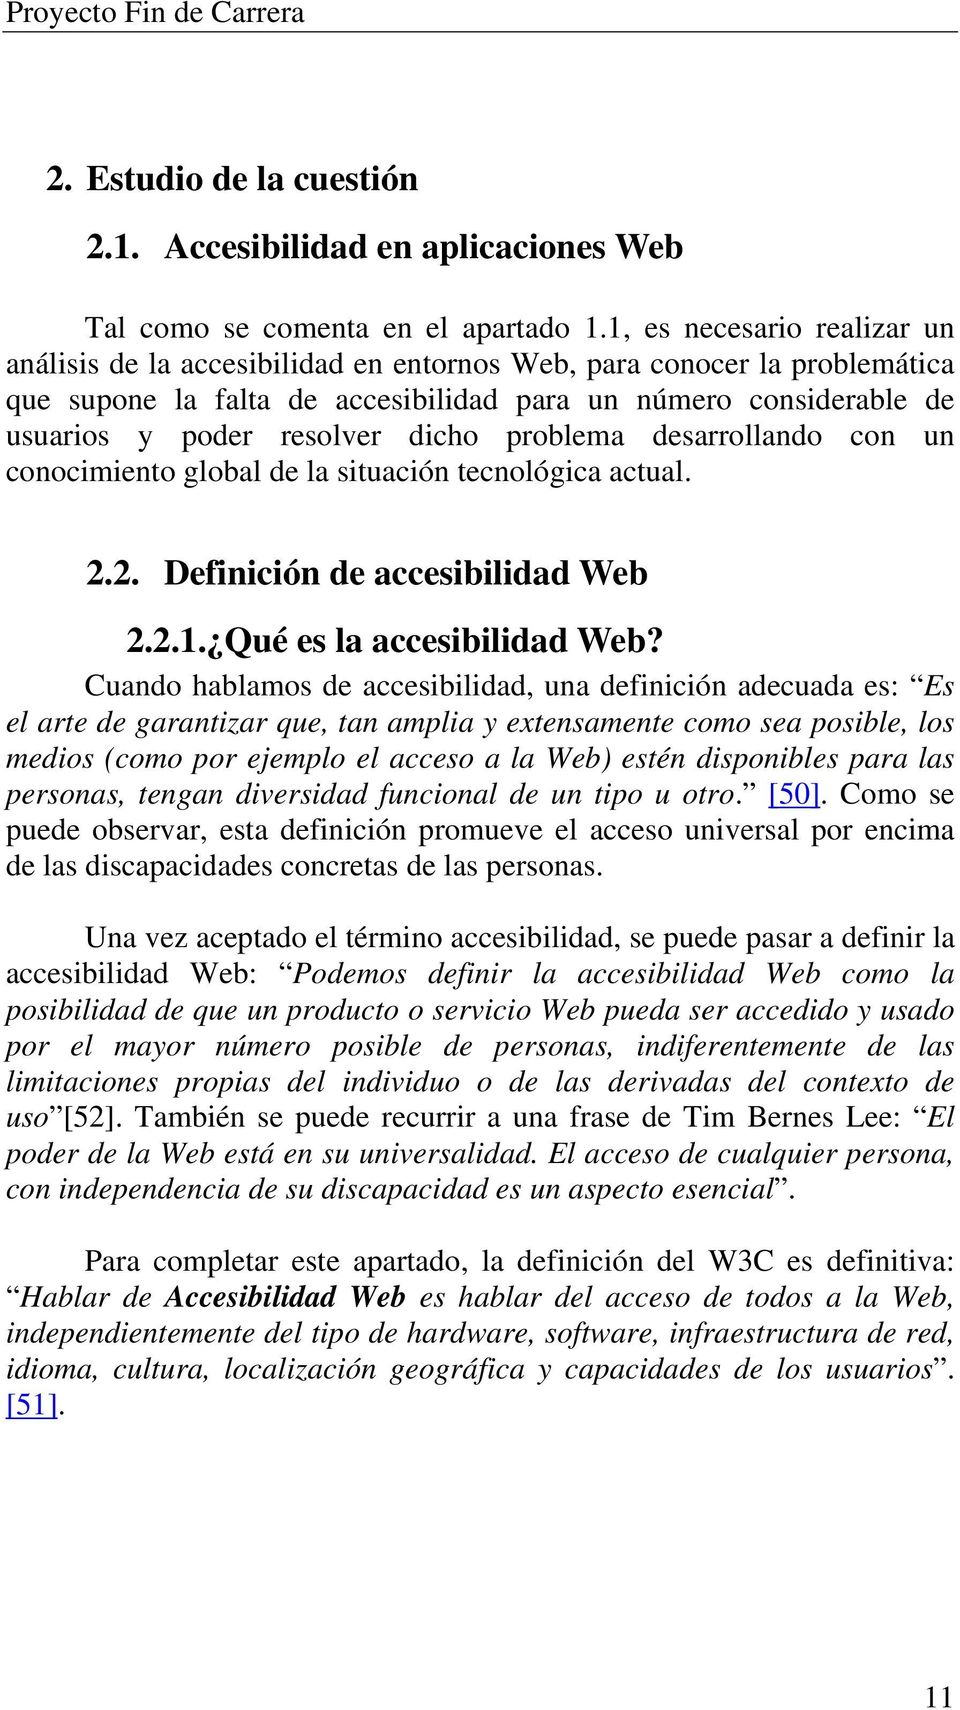 dicho problema desarrollando con un conocimiento global de la situación tecnológica actual. 2.2. Definición de accesibilidad Web 2.2.1. Qué es la accesibilidad Web?